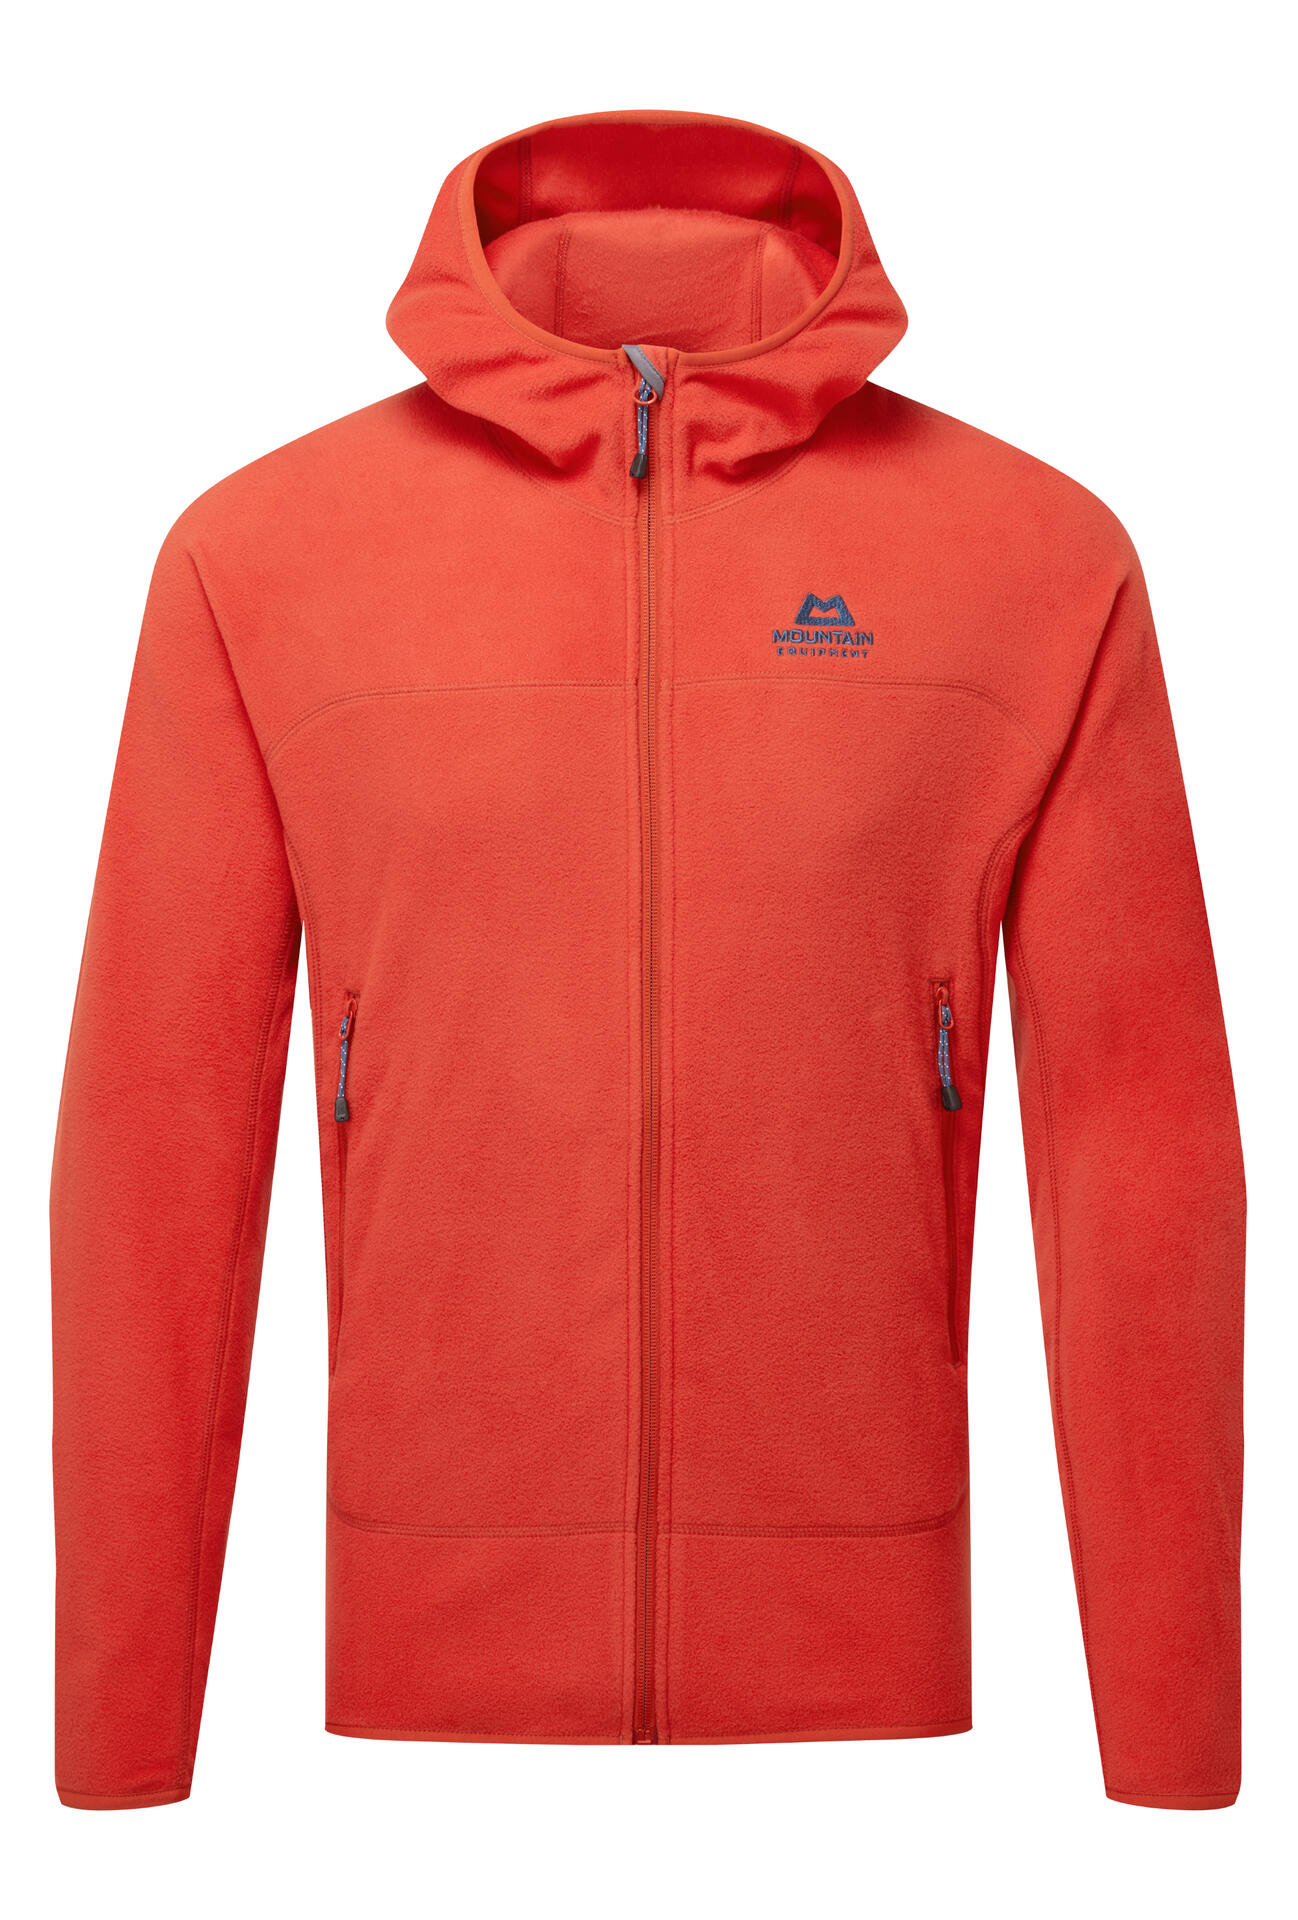 Mountain Equipment Micro Zip Jacket Men'S Barva: Red Rock, Velikost: XL